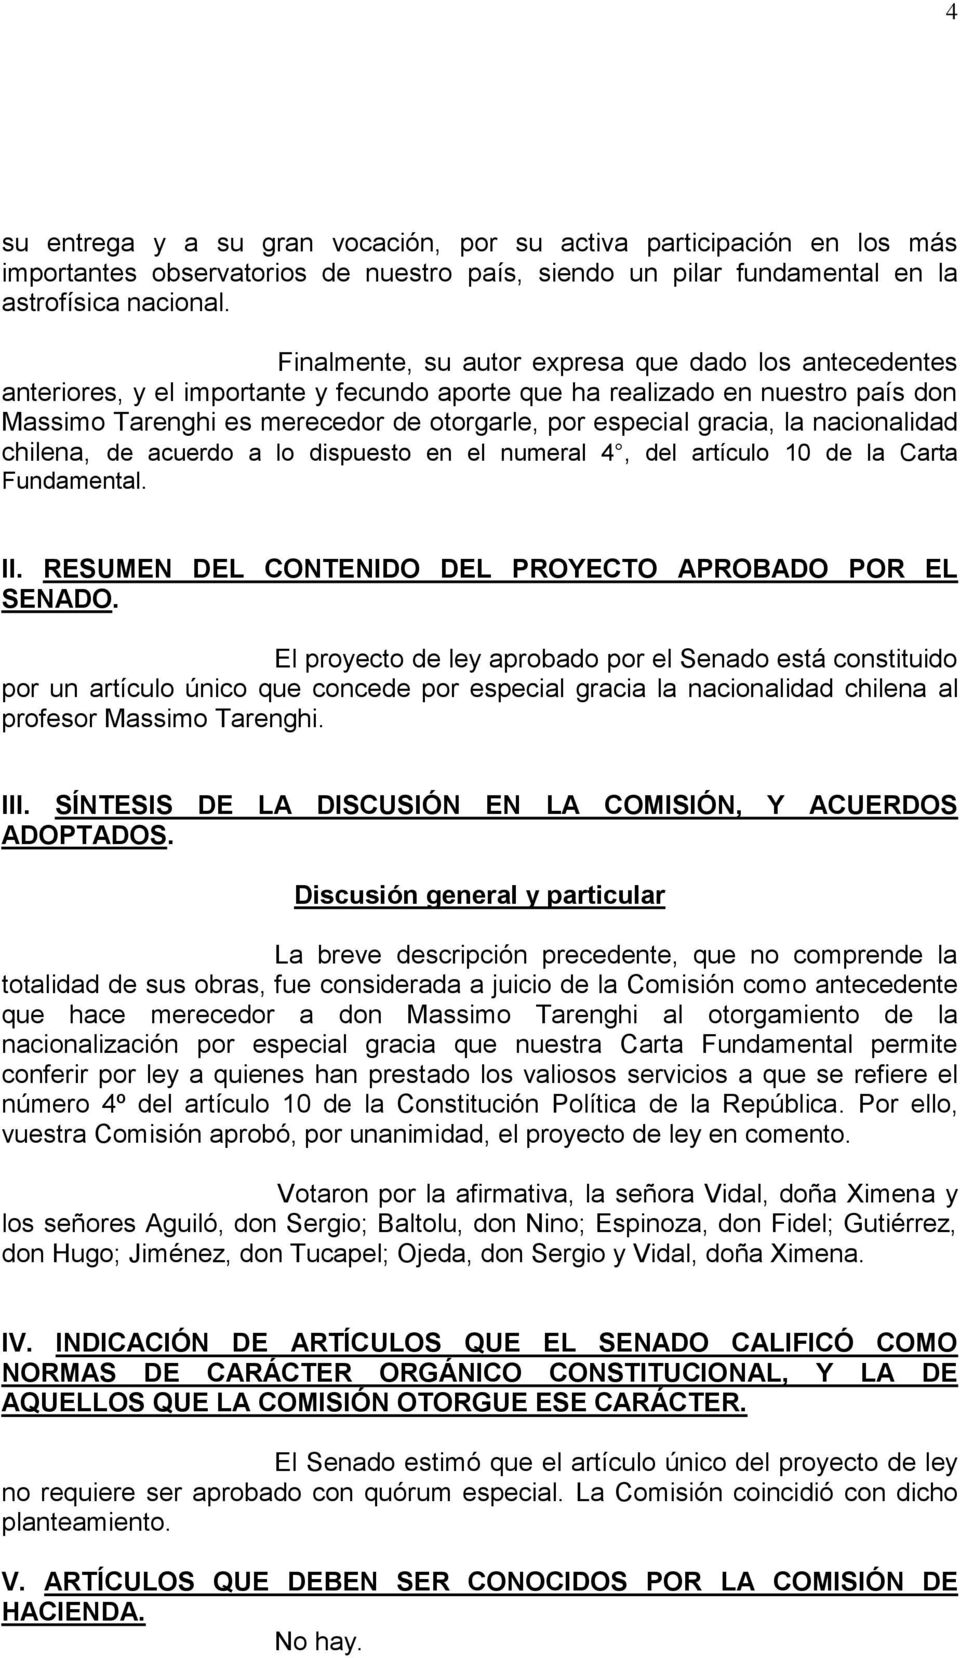 gracia, la nacionalidad chilena, de acuerdo a lo dispuesto en el numeral 4, del artículo 10 de la Carta Fundamental. II. RESUMEN DEL CONTENIDO DEL PROYECTO APROBADO POR EL SENADO.